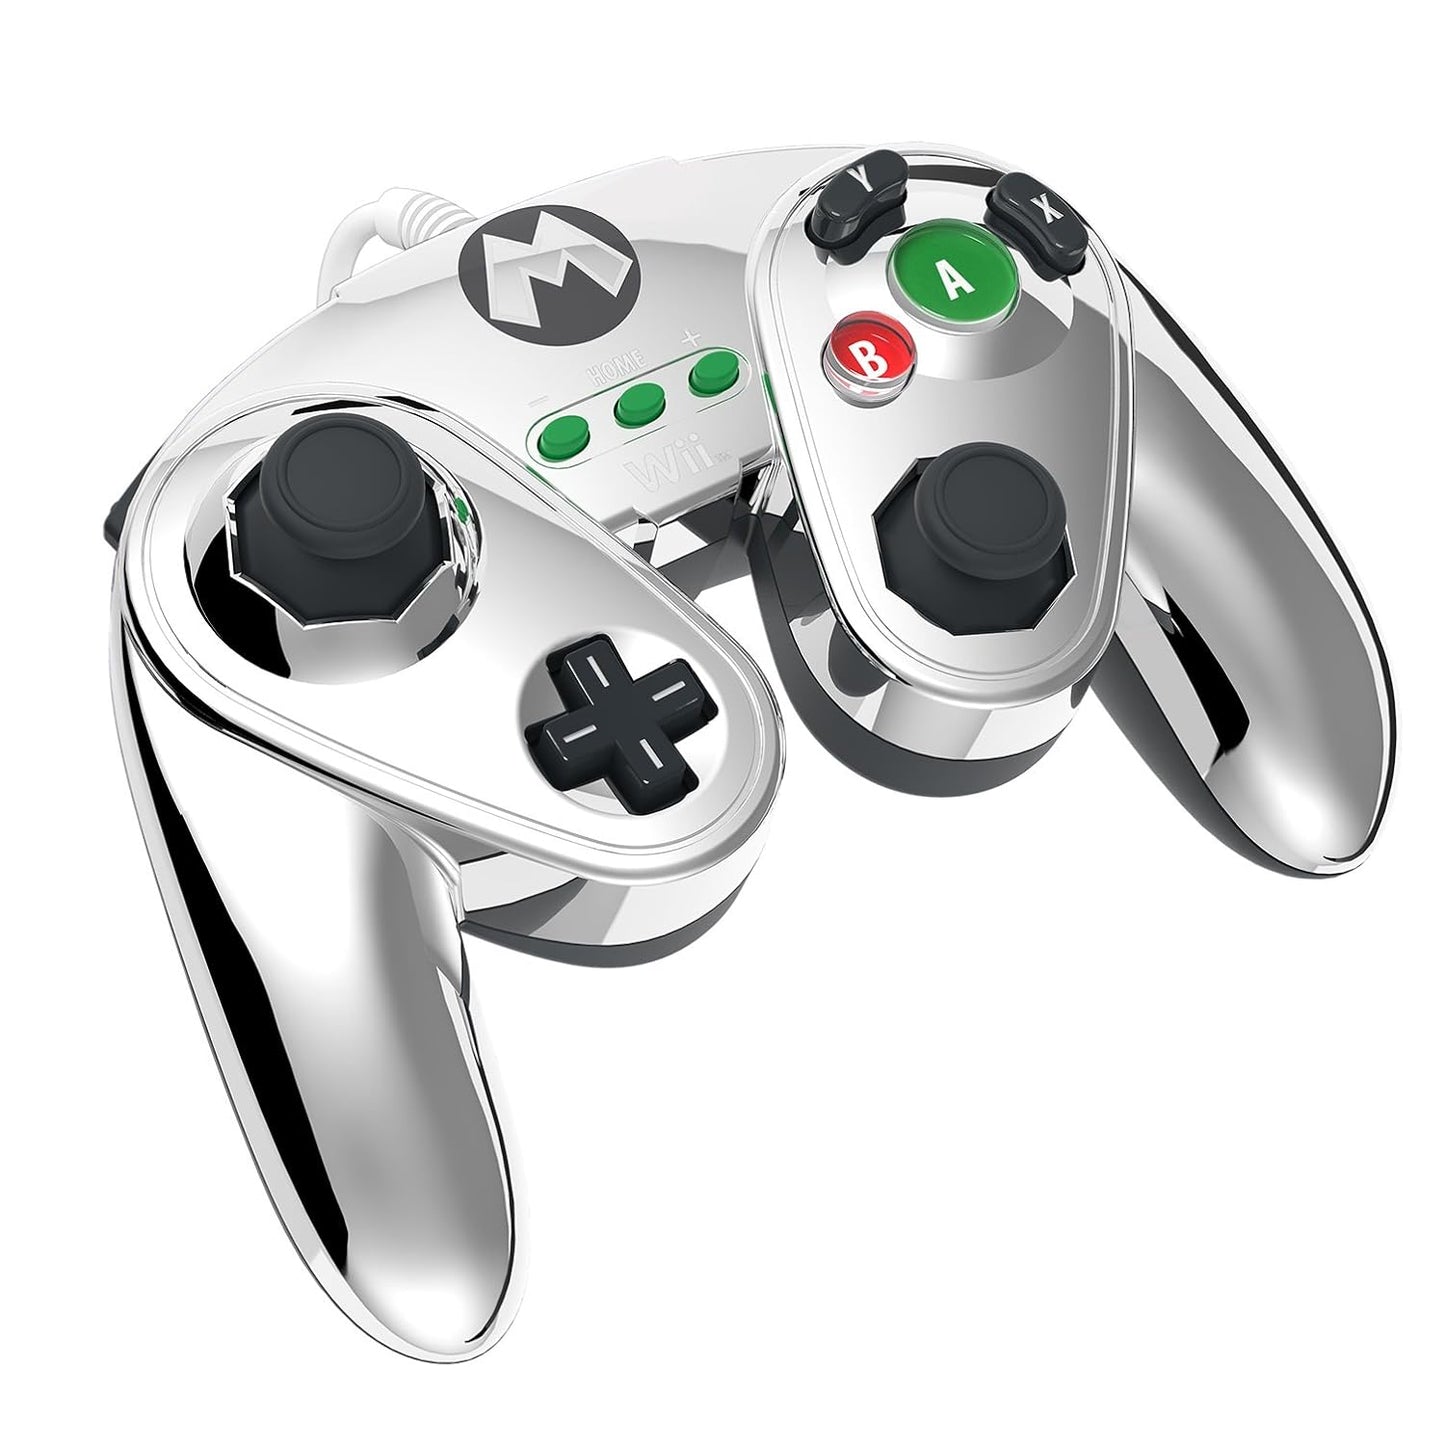 Controller (GameCube Design)